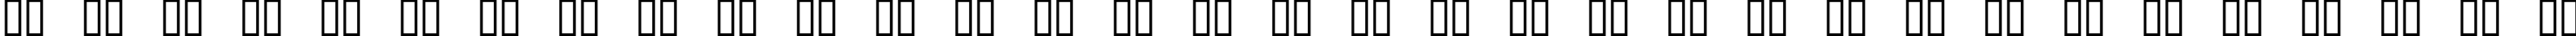 Пример написания русского алфавита шрифтом Excelerate Left